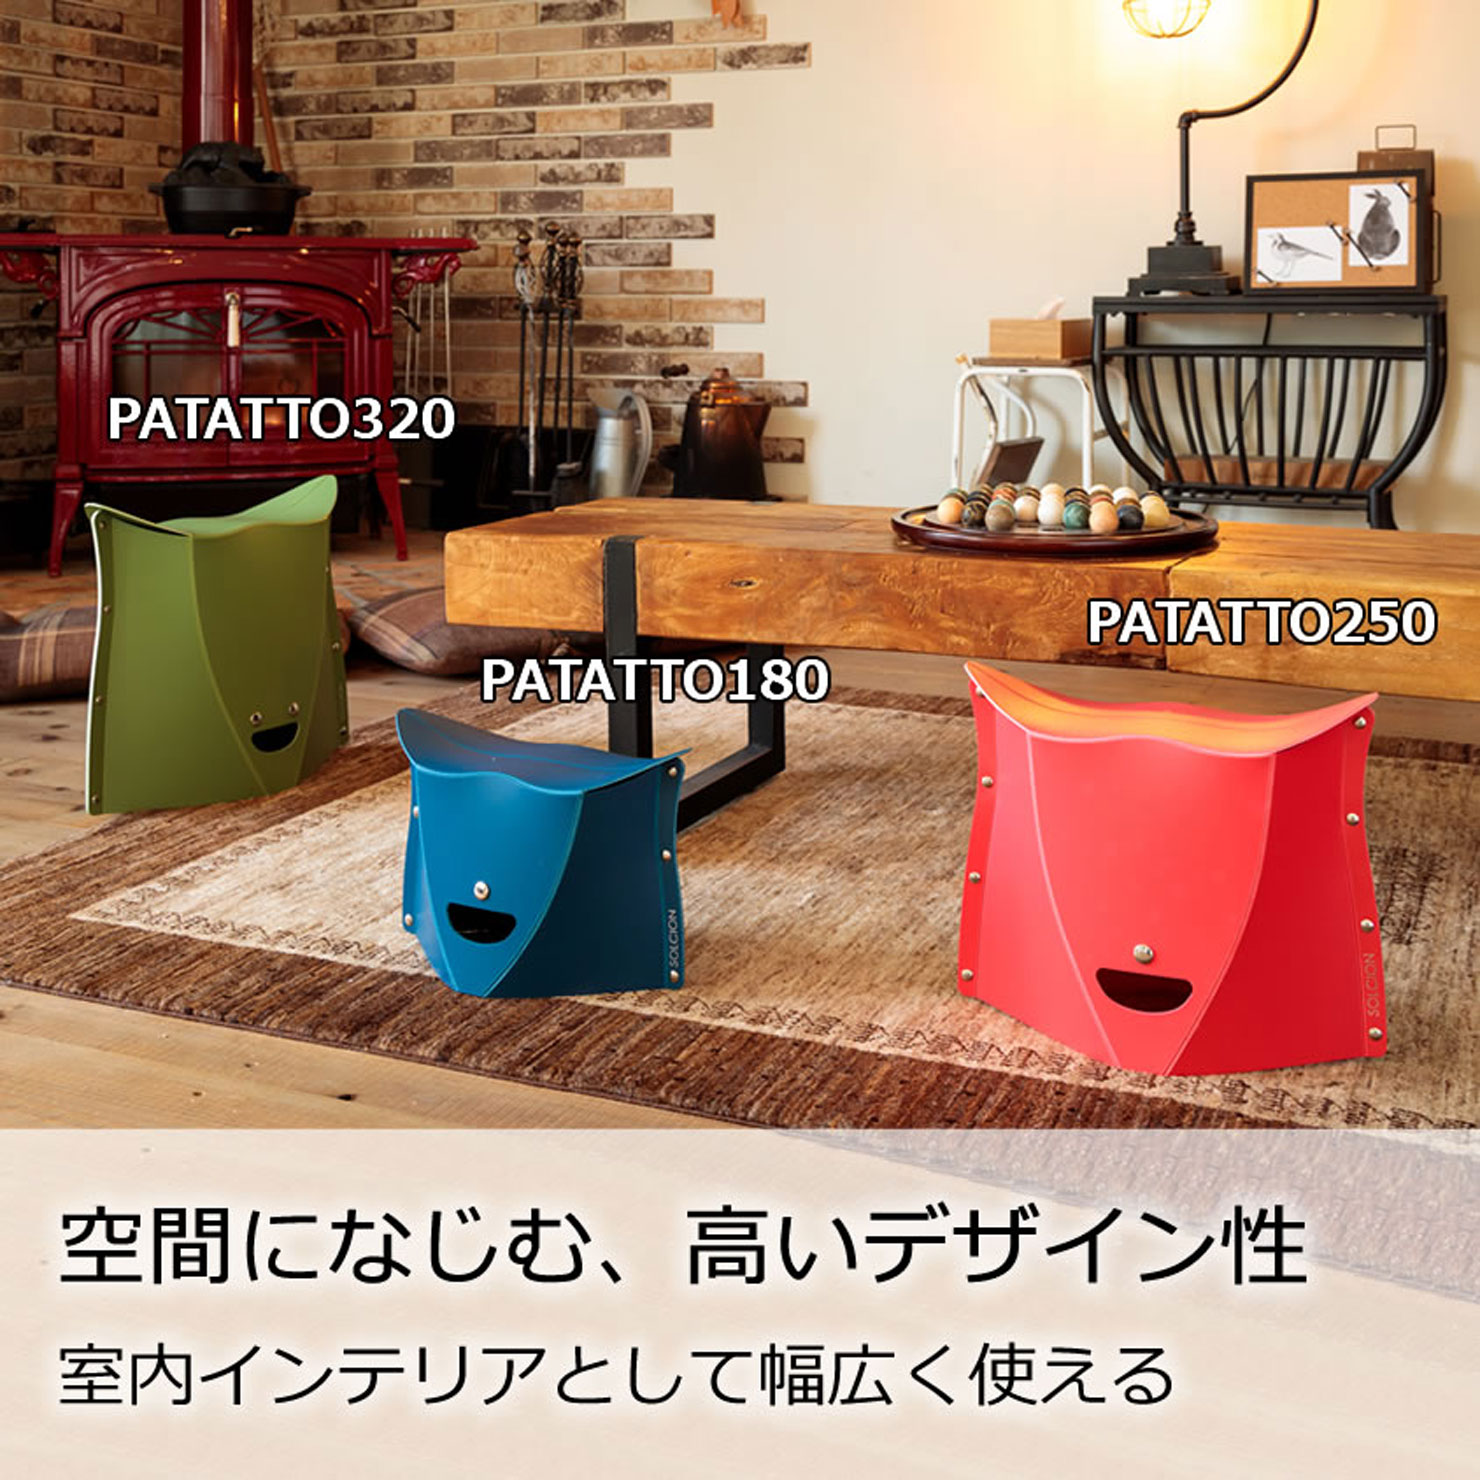 PATATTO320｜商品一覧｜SOLCION 公式ブランドサイト